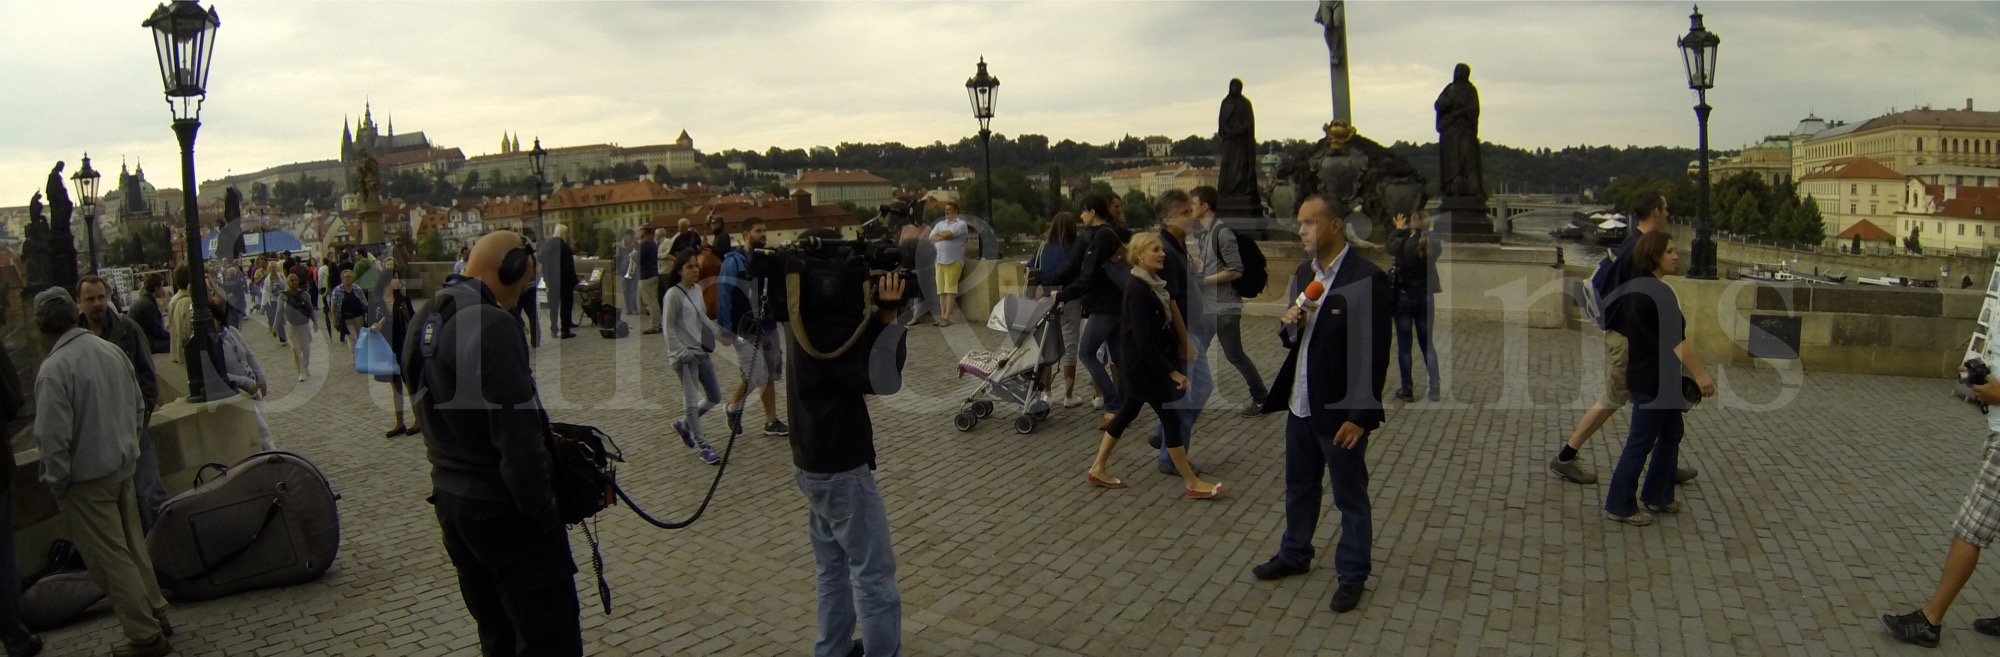 Video Production Prague